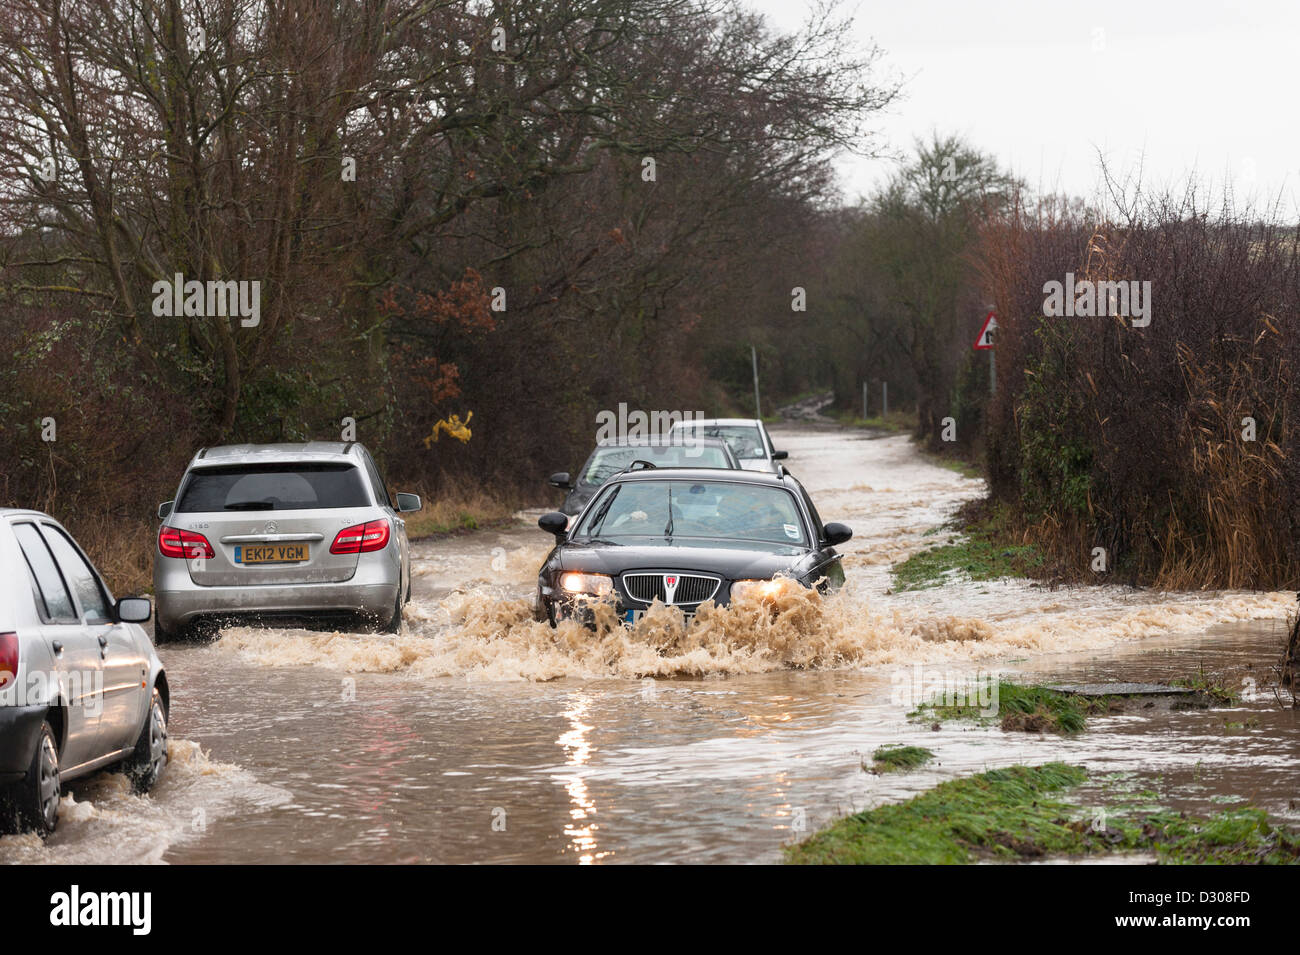 Las inundaciones, REINO UNIDO - Coches lucha para conducir a lo largo de una carretera inundada, Inglaterra, Reino Unido. Foto de stock